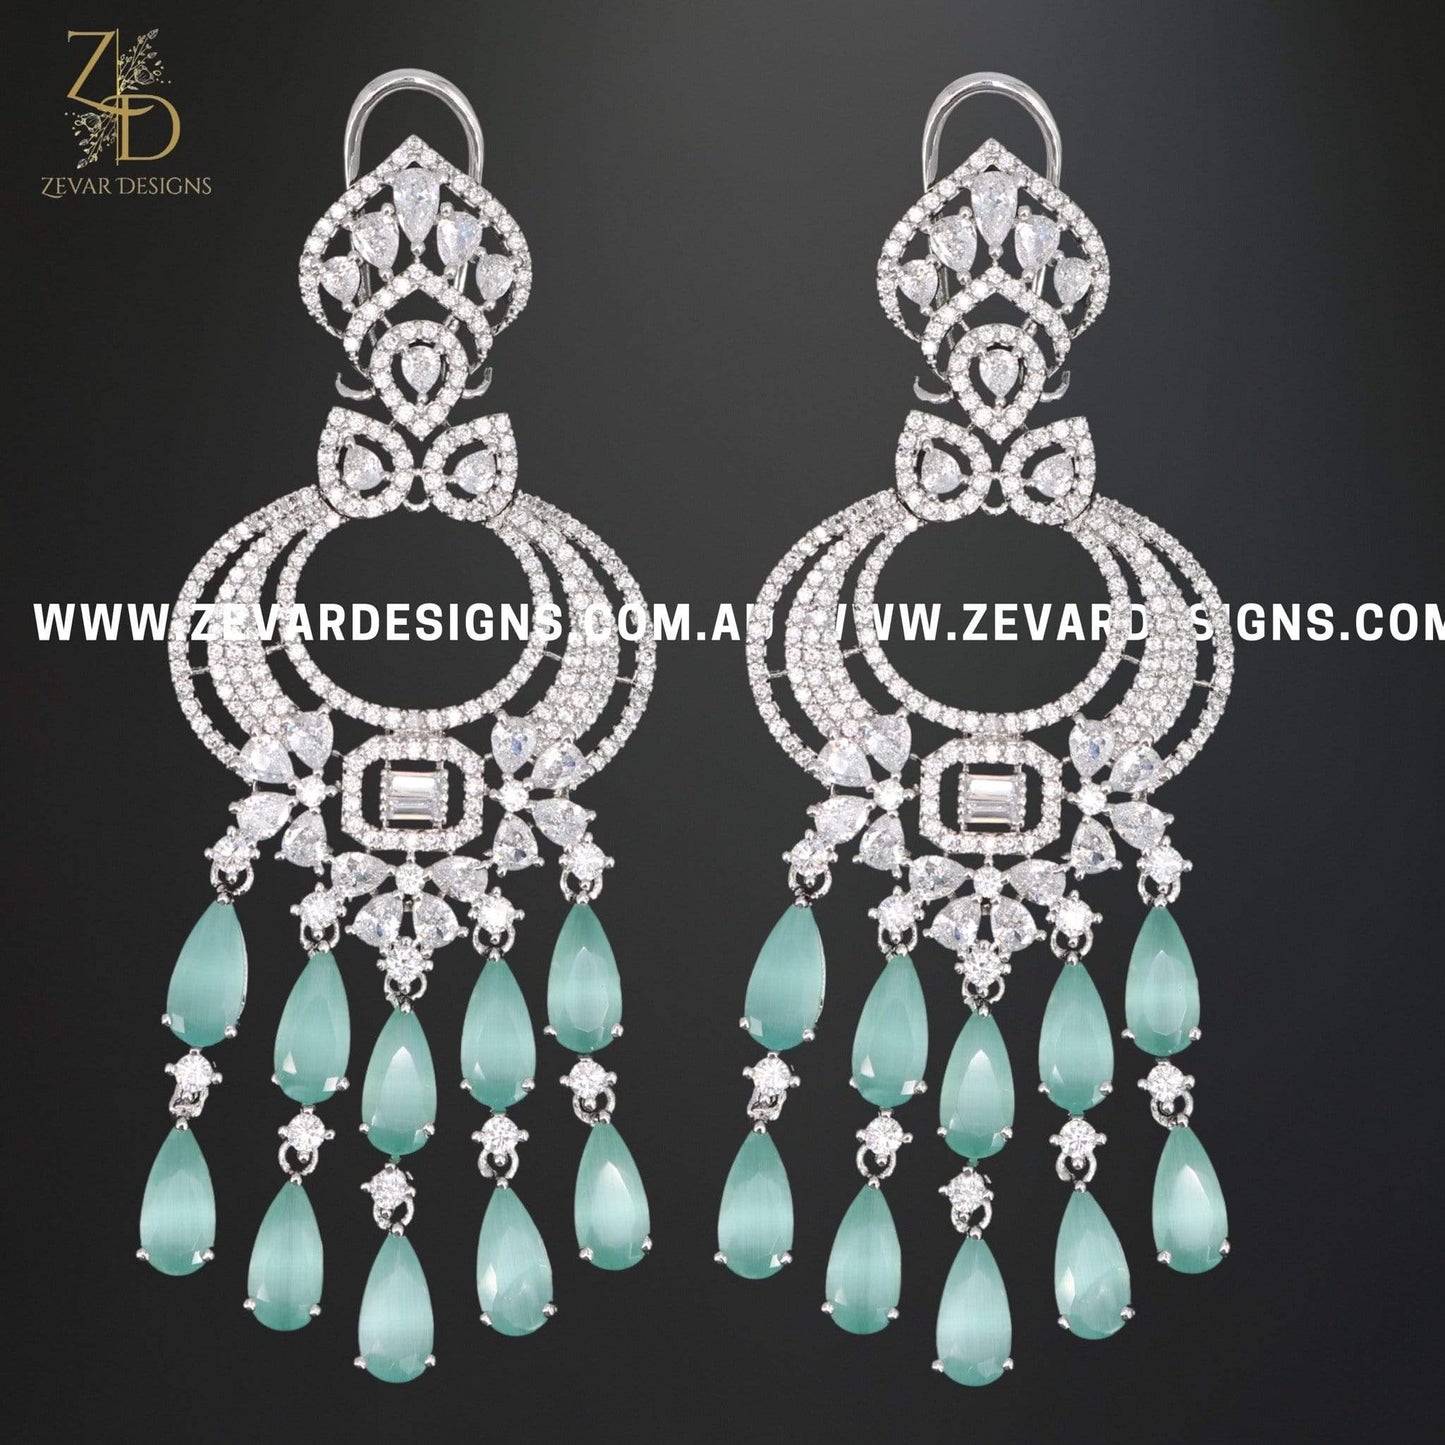 Zevar Designs Indo-Western Earrings Zircon/AD Earrings - Mint